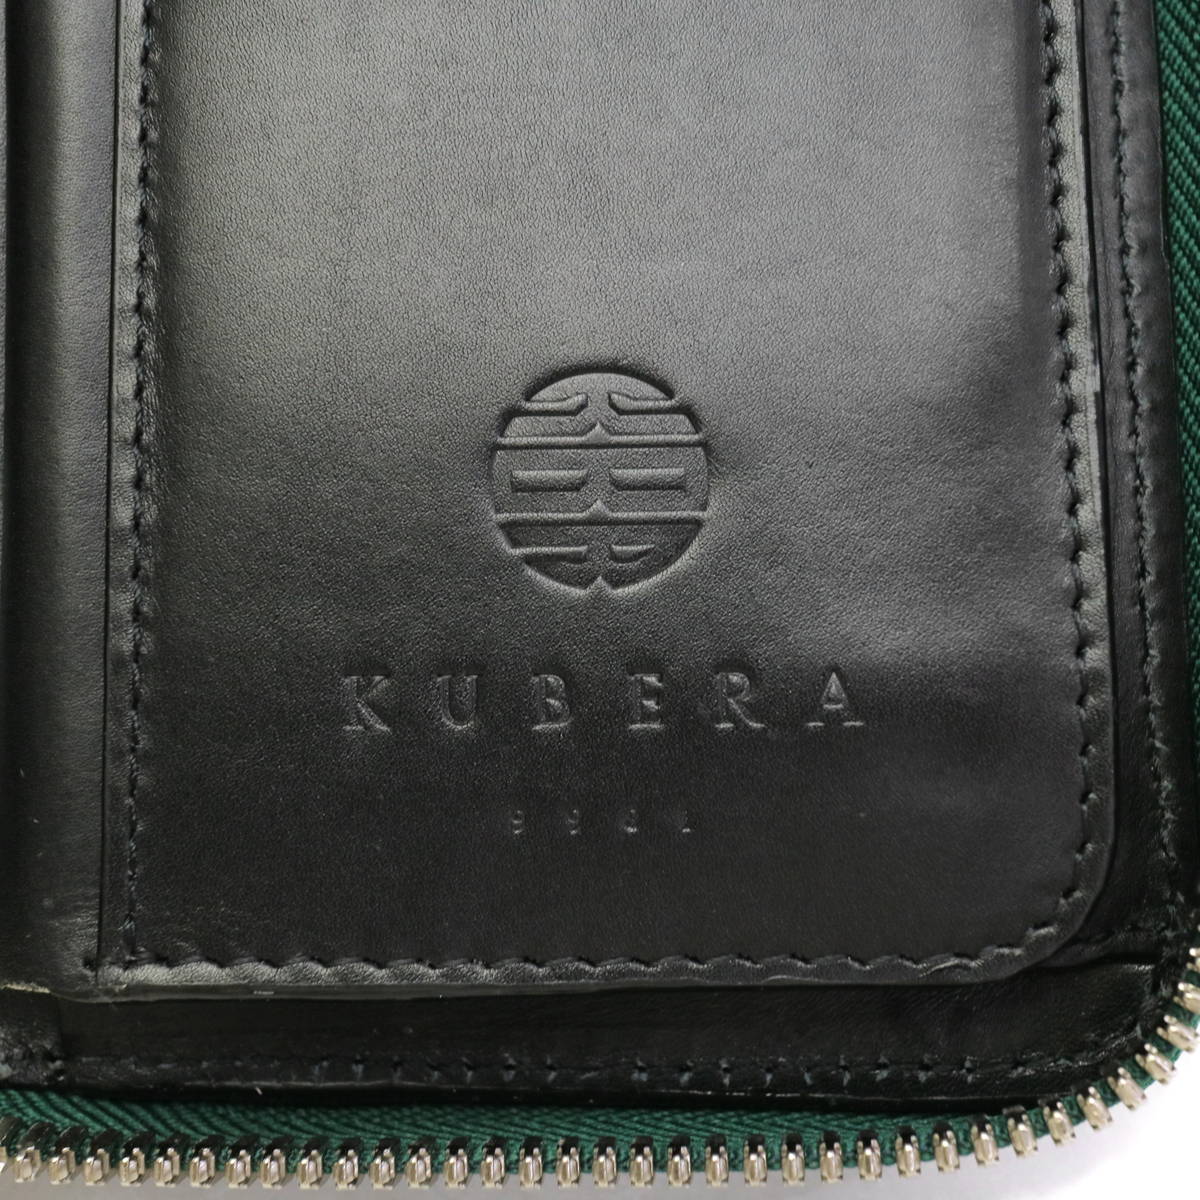 クベラ KUBERA 型押しコードバン 二つ折り財布 ネイビー【メンズ】